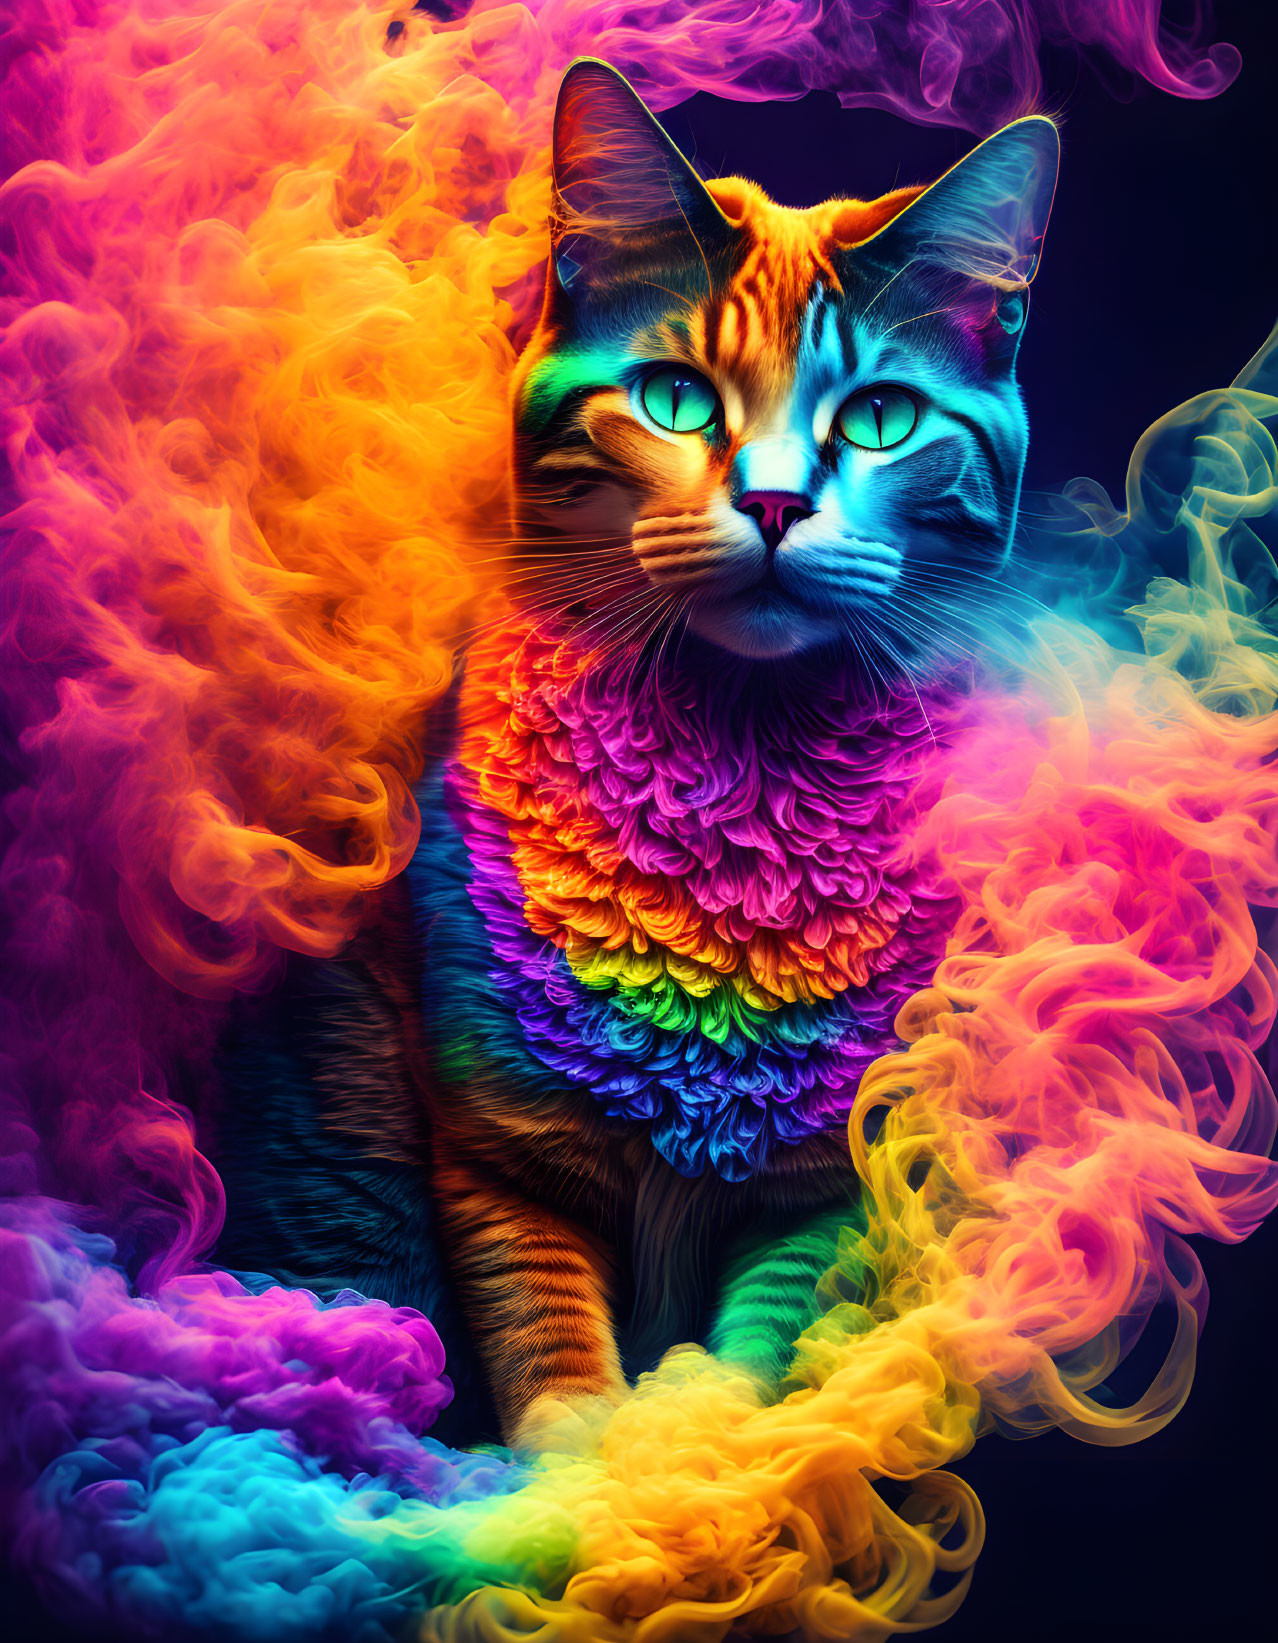 Colorful Cat Artwork: Multicolored Fur Texture in Neon Smoke